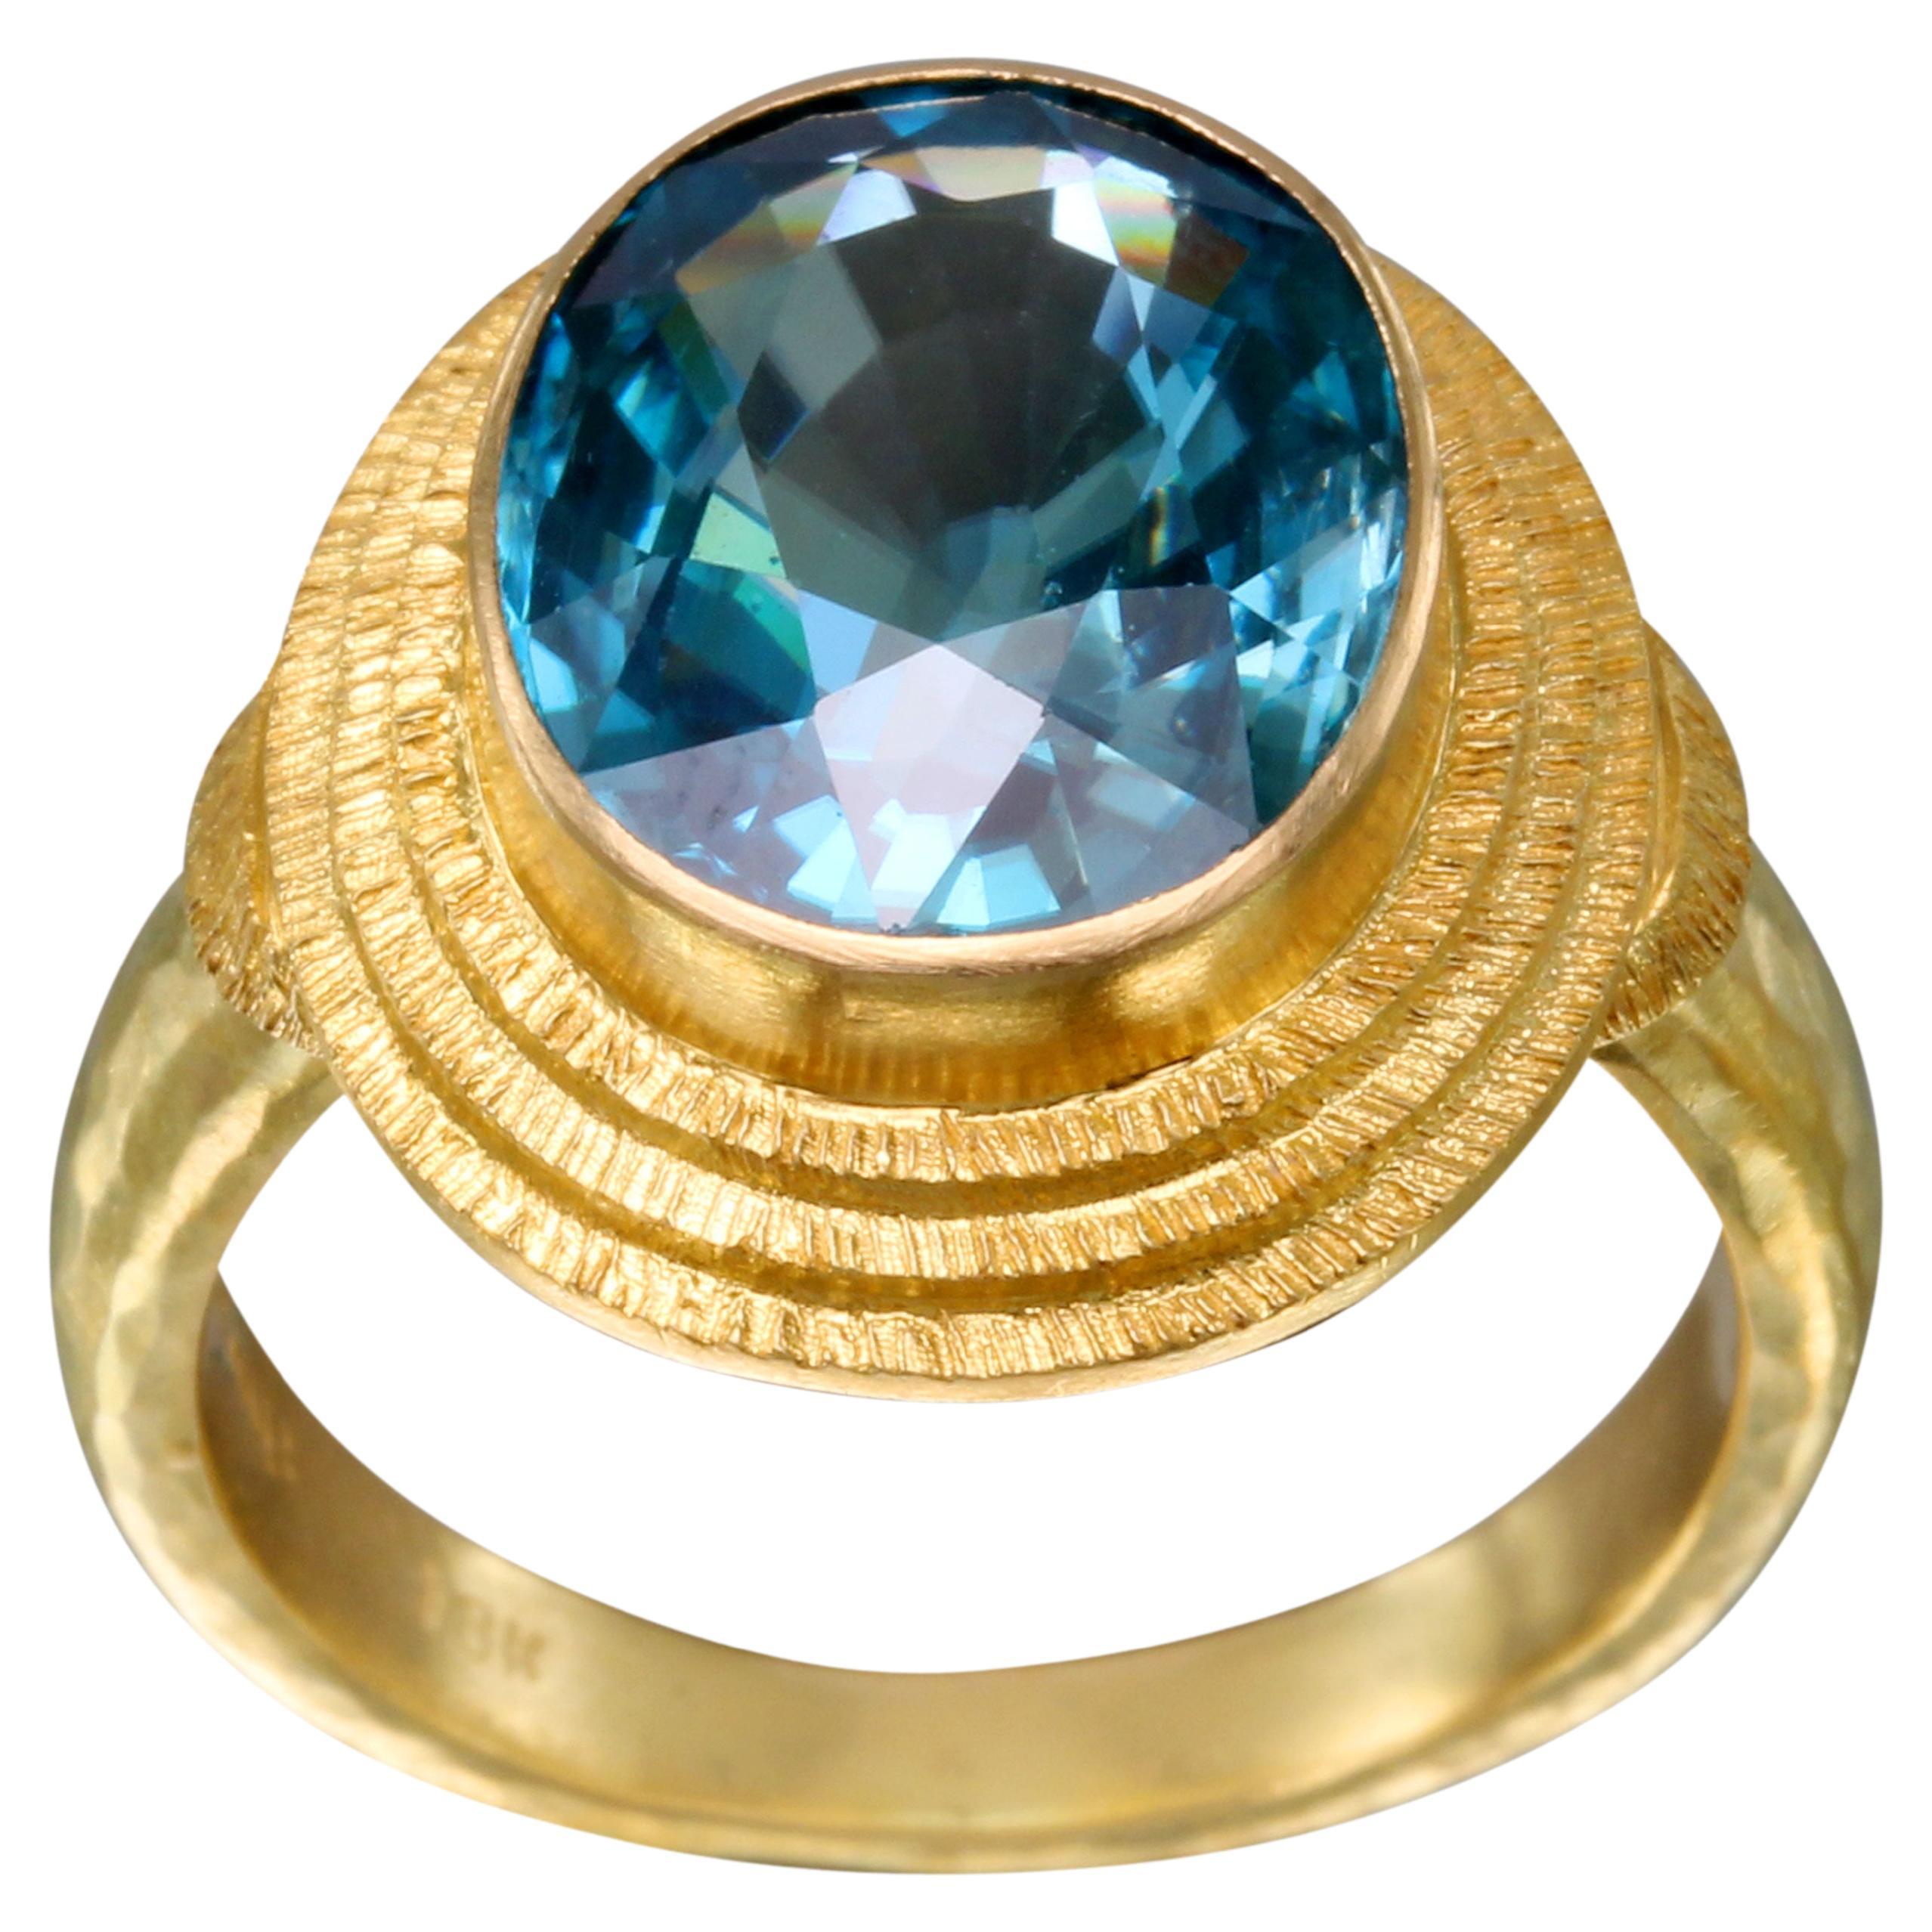 Steven Battelle 8.5 Carats Blue Zircon 18K Gold Ring